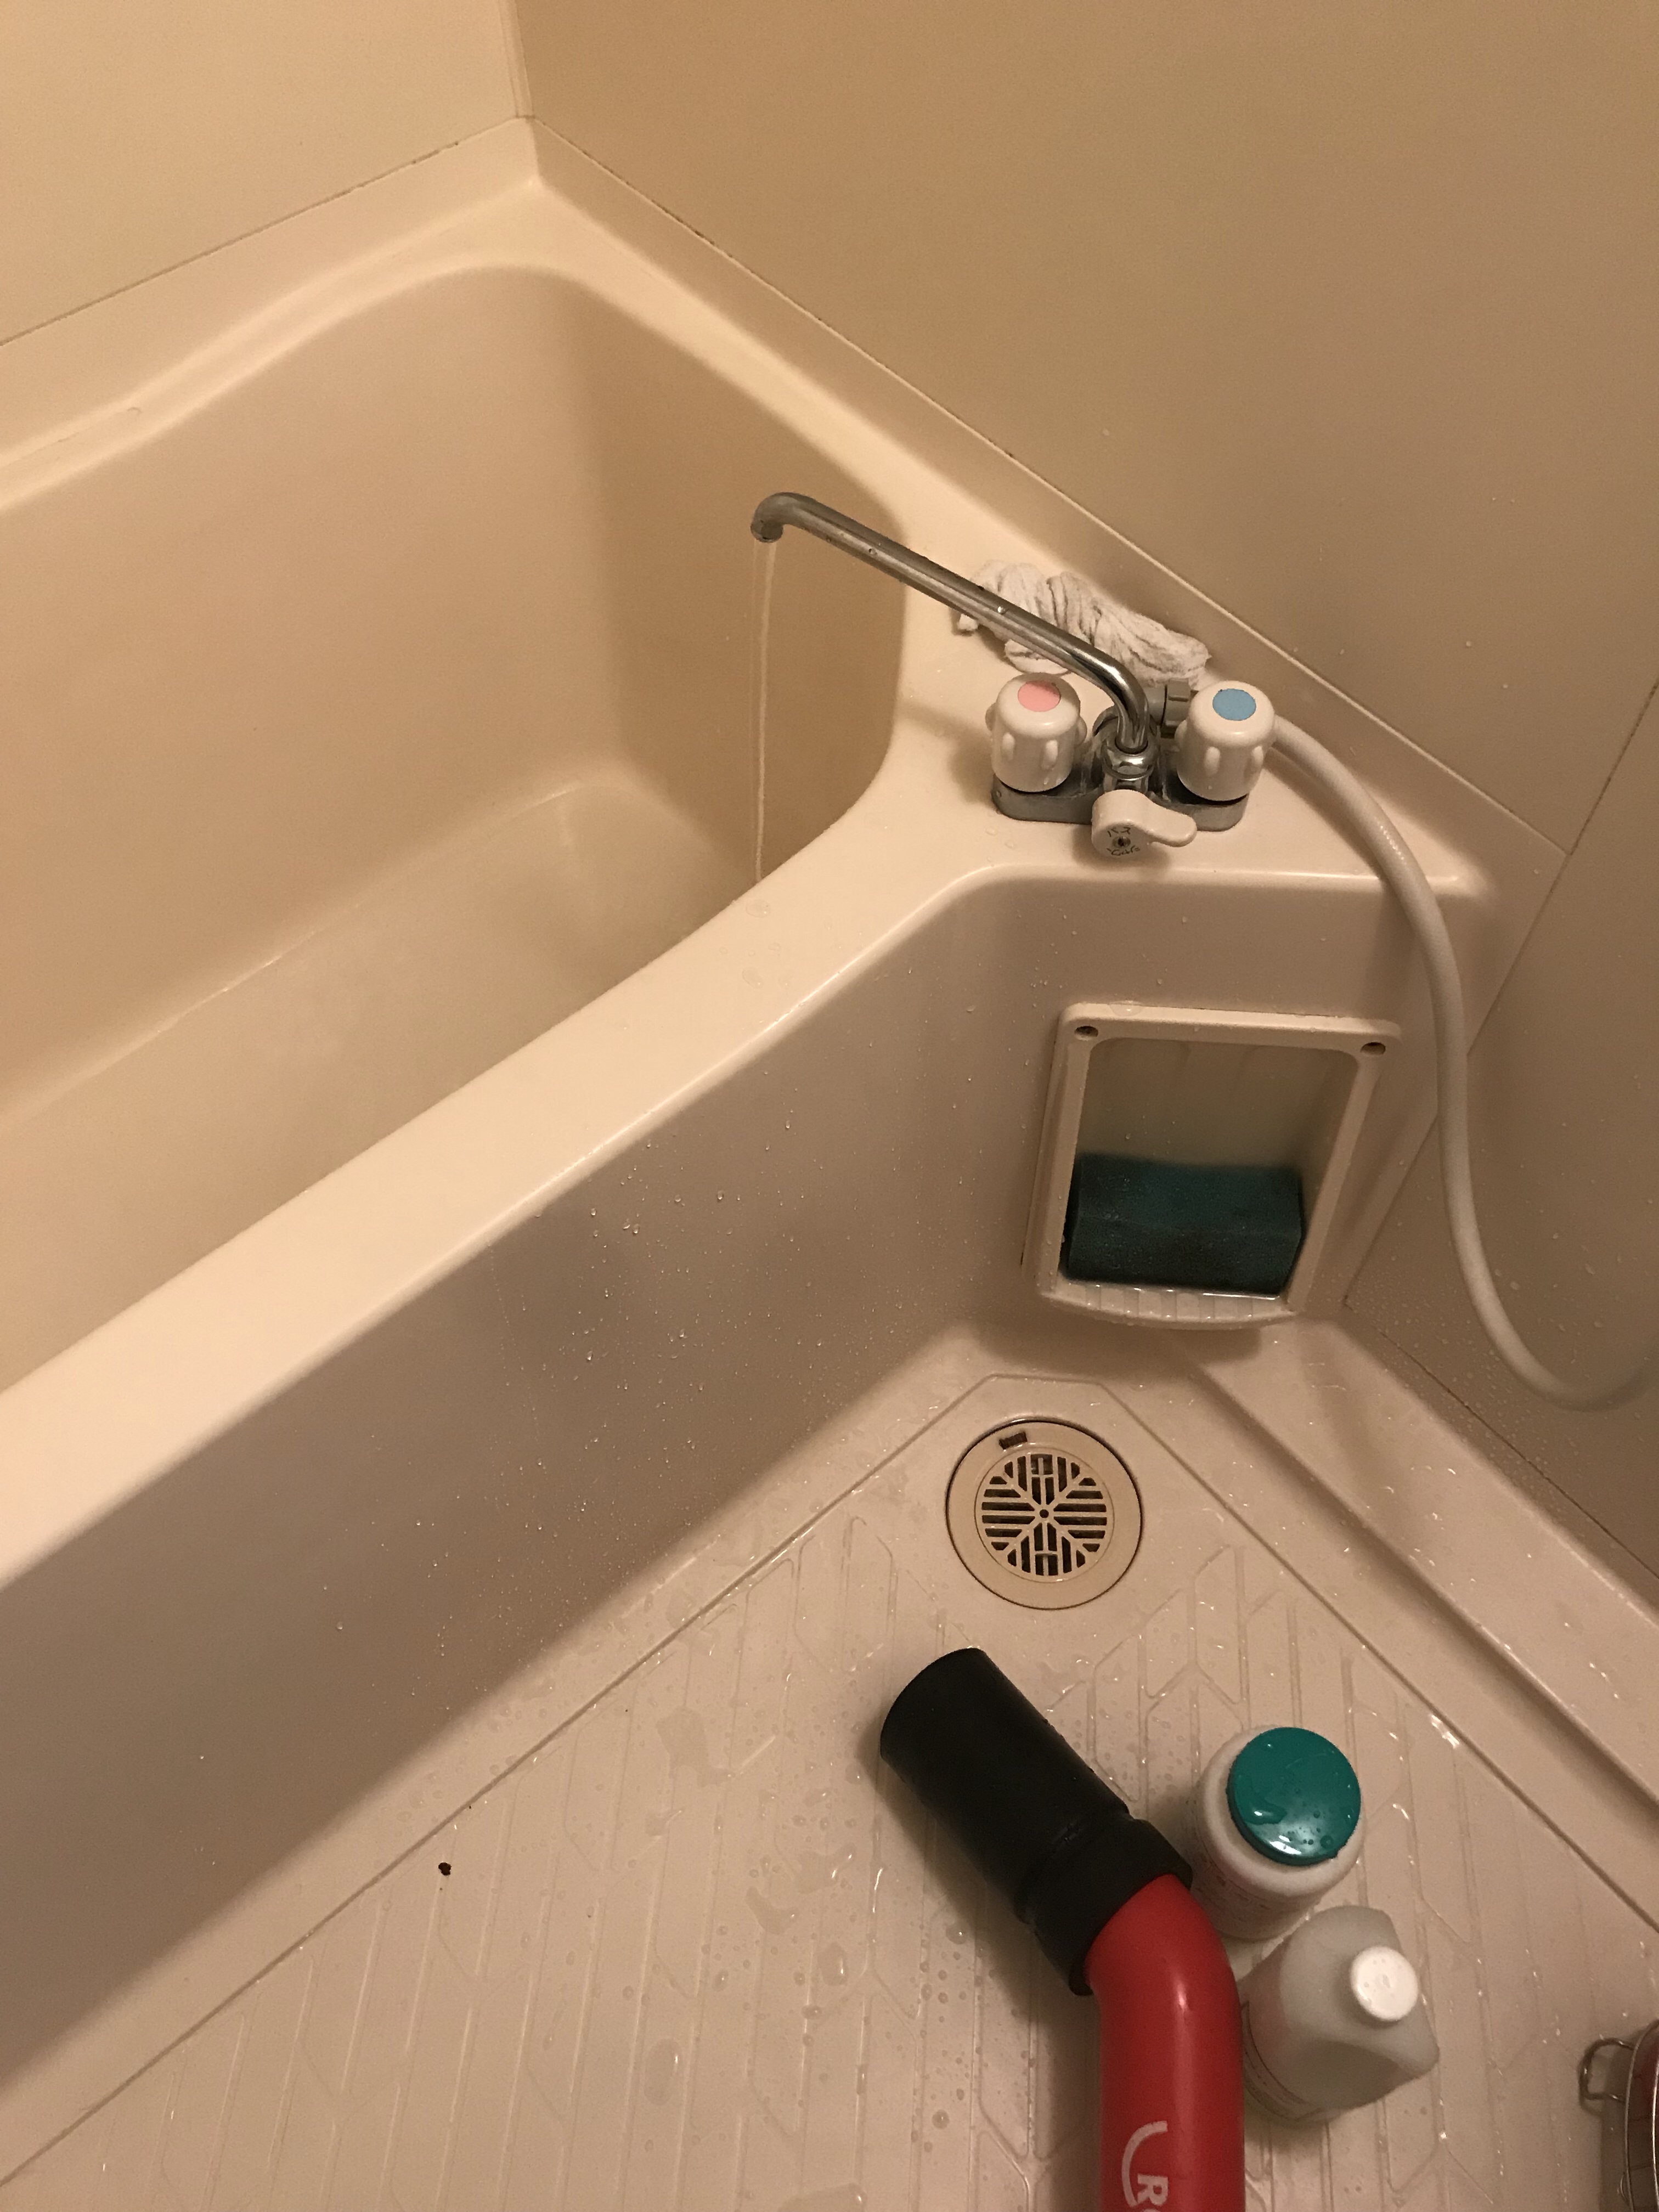 浴室排水詰まり 京都市 水もれドルフィン